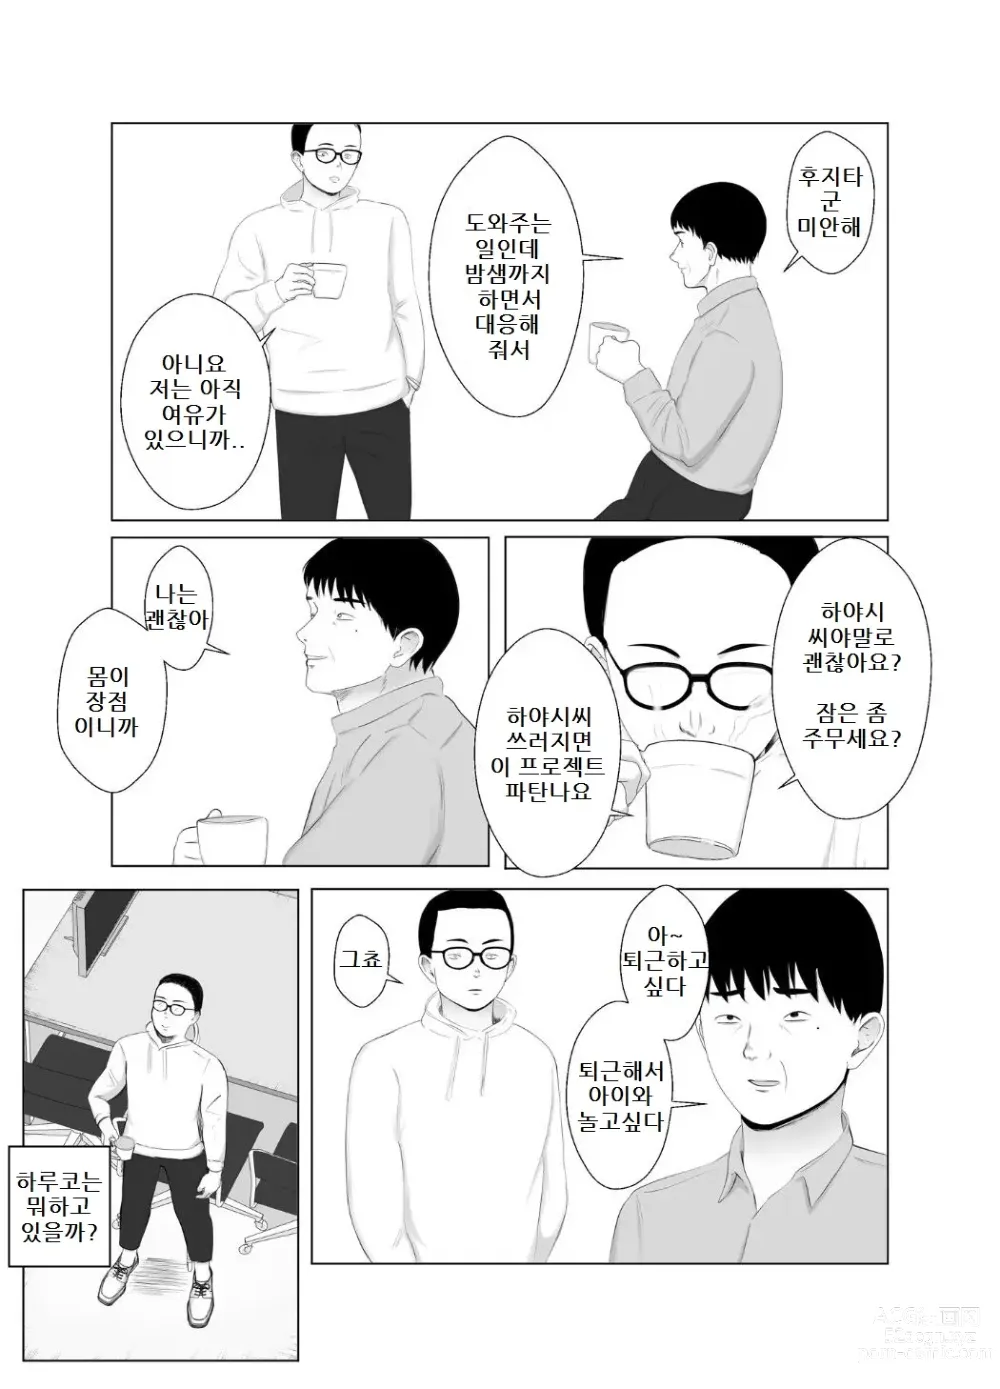 Page 47 of doujinshi 네토라세 검토해주세요 3, ~배덕의 늪에 어서와요~